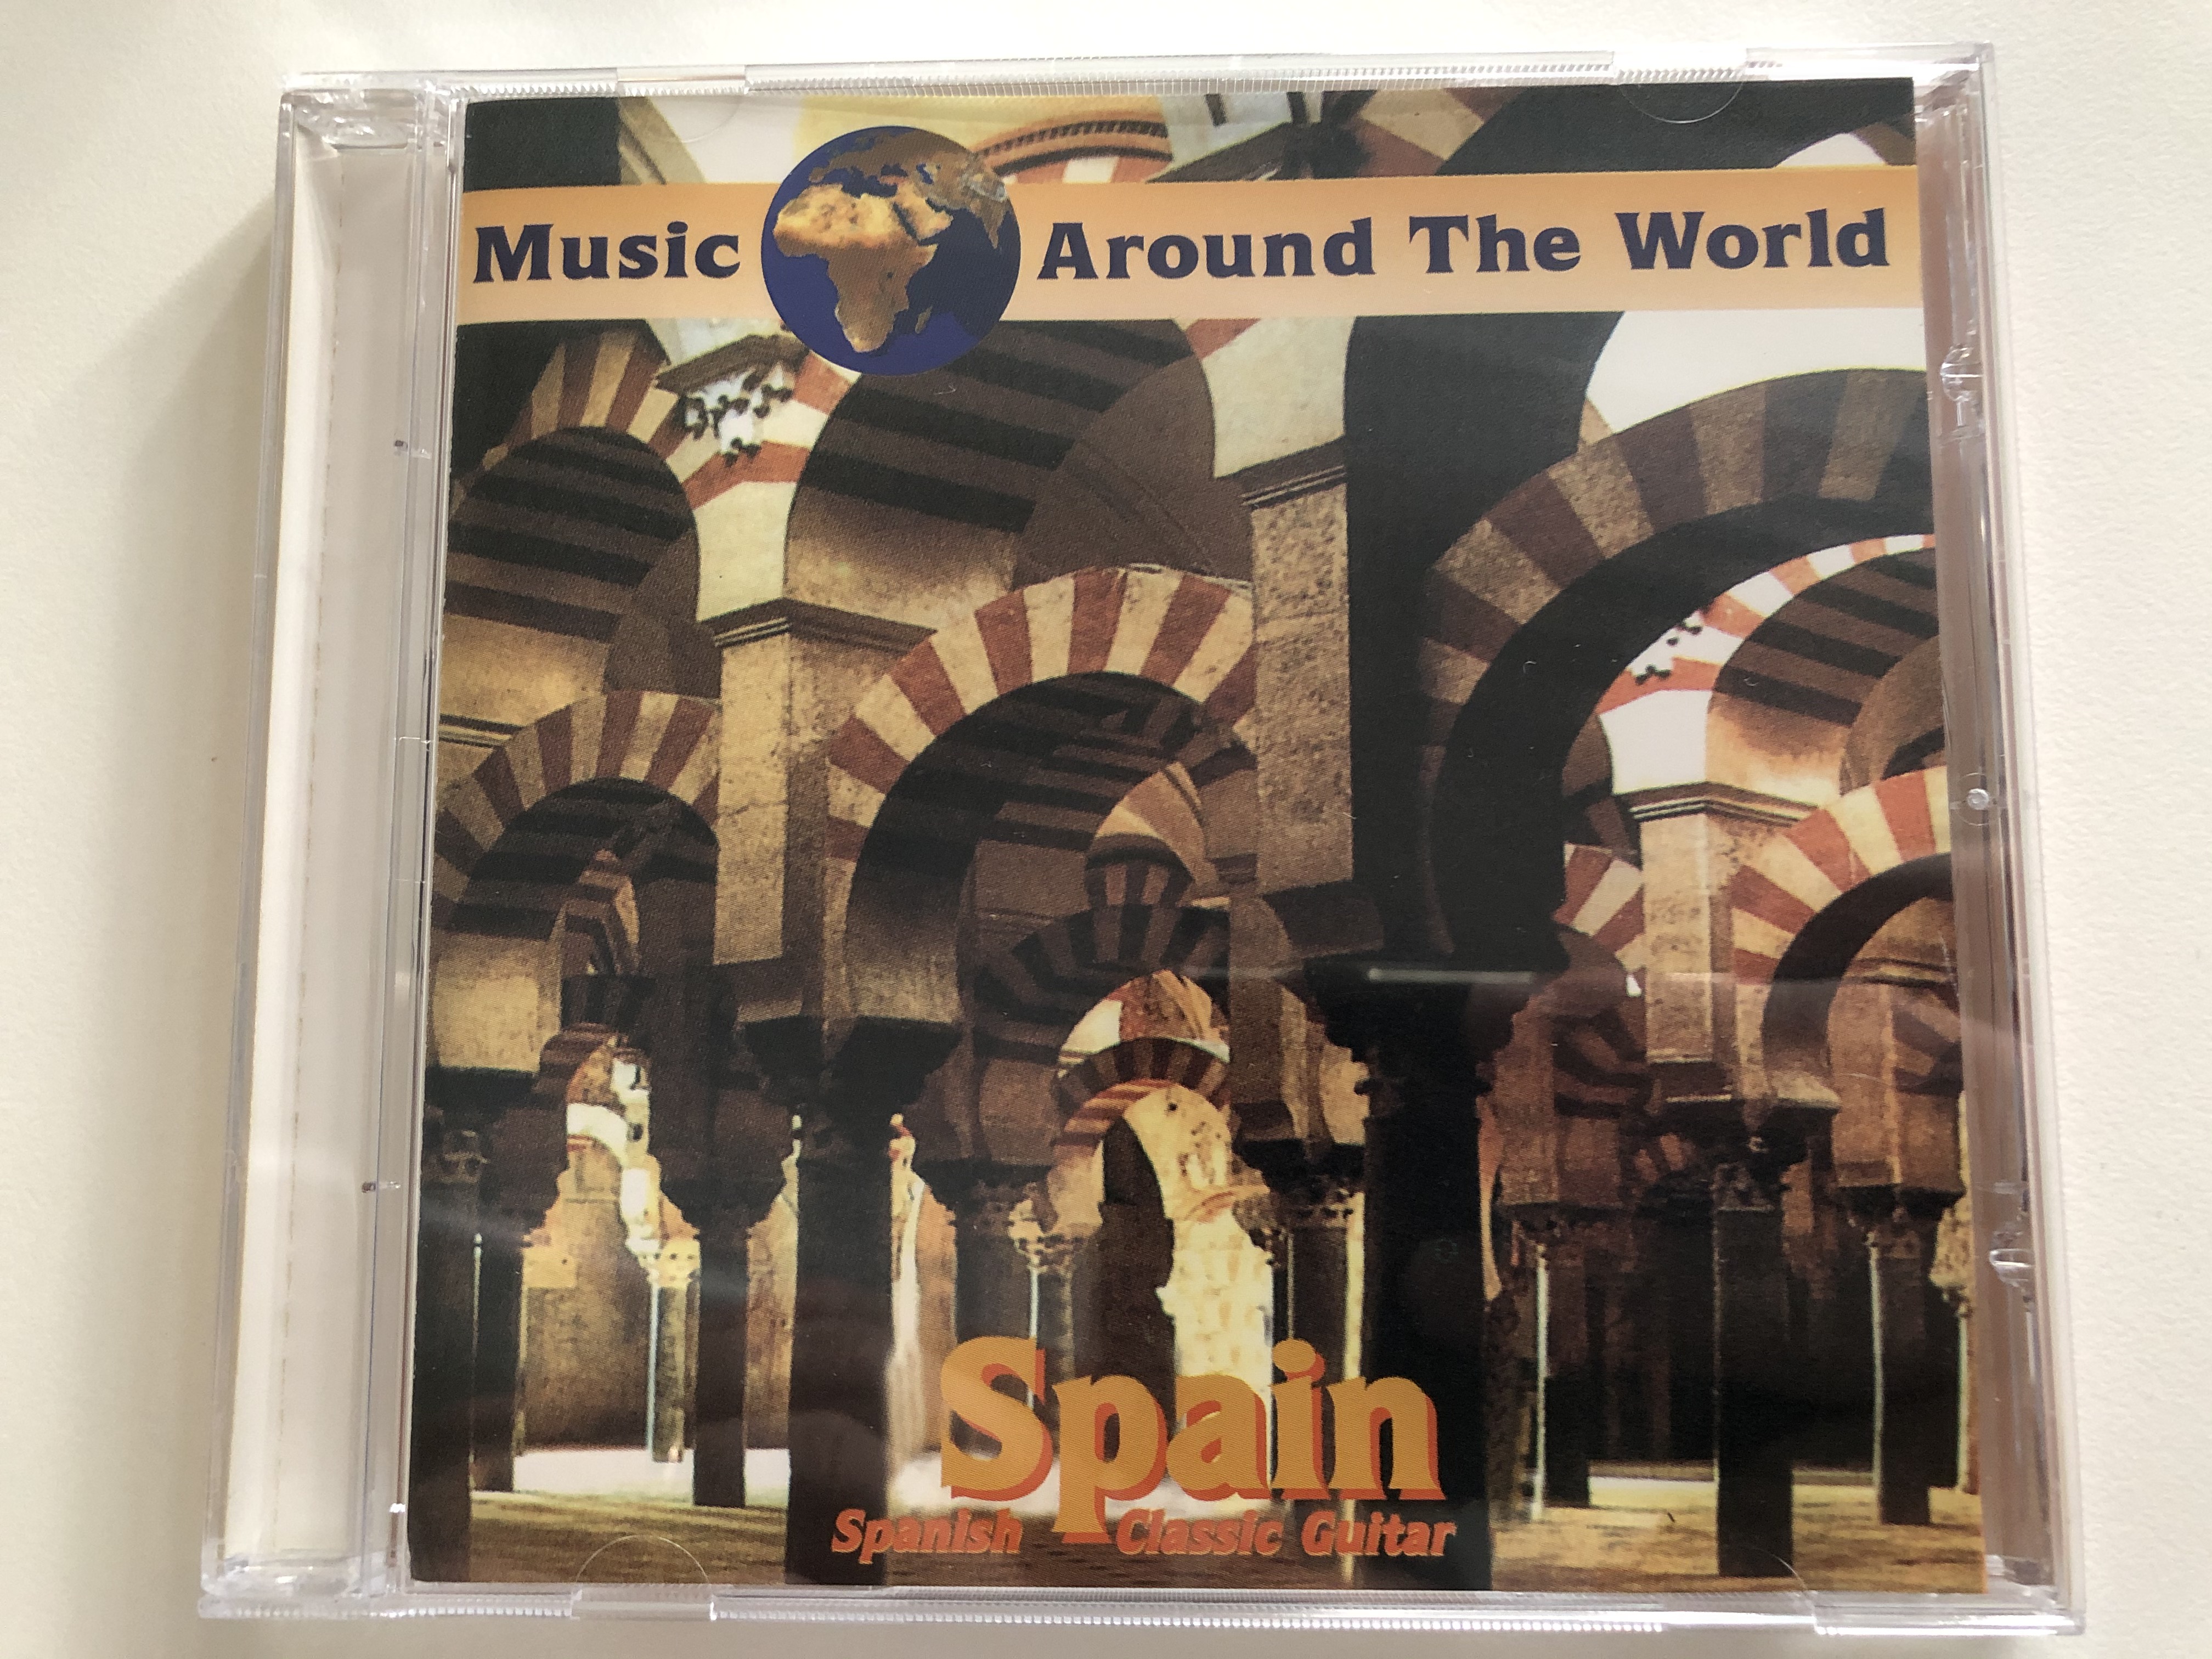 music-around-the-world-spain-spanish-classic-guitar-galaxy-music-audio-cd-1995-3881602-1-.jpg